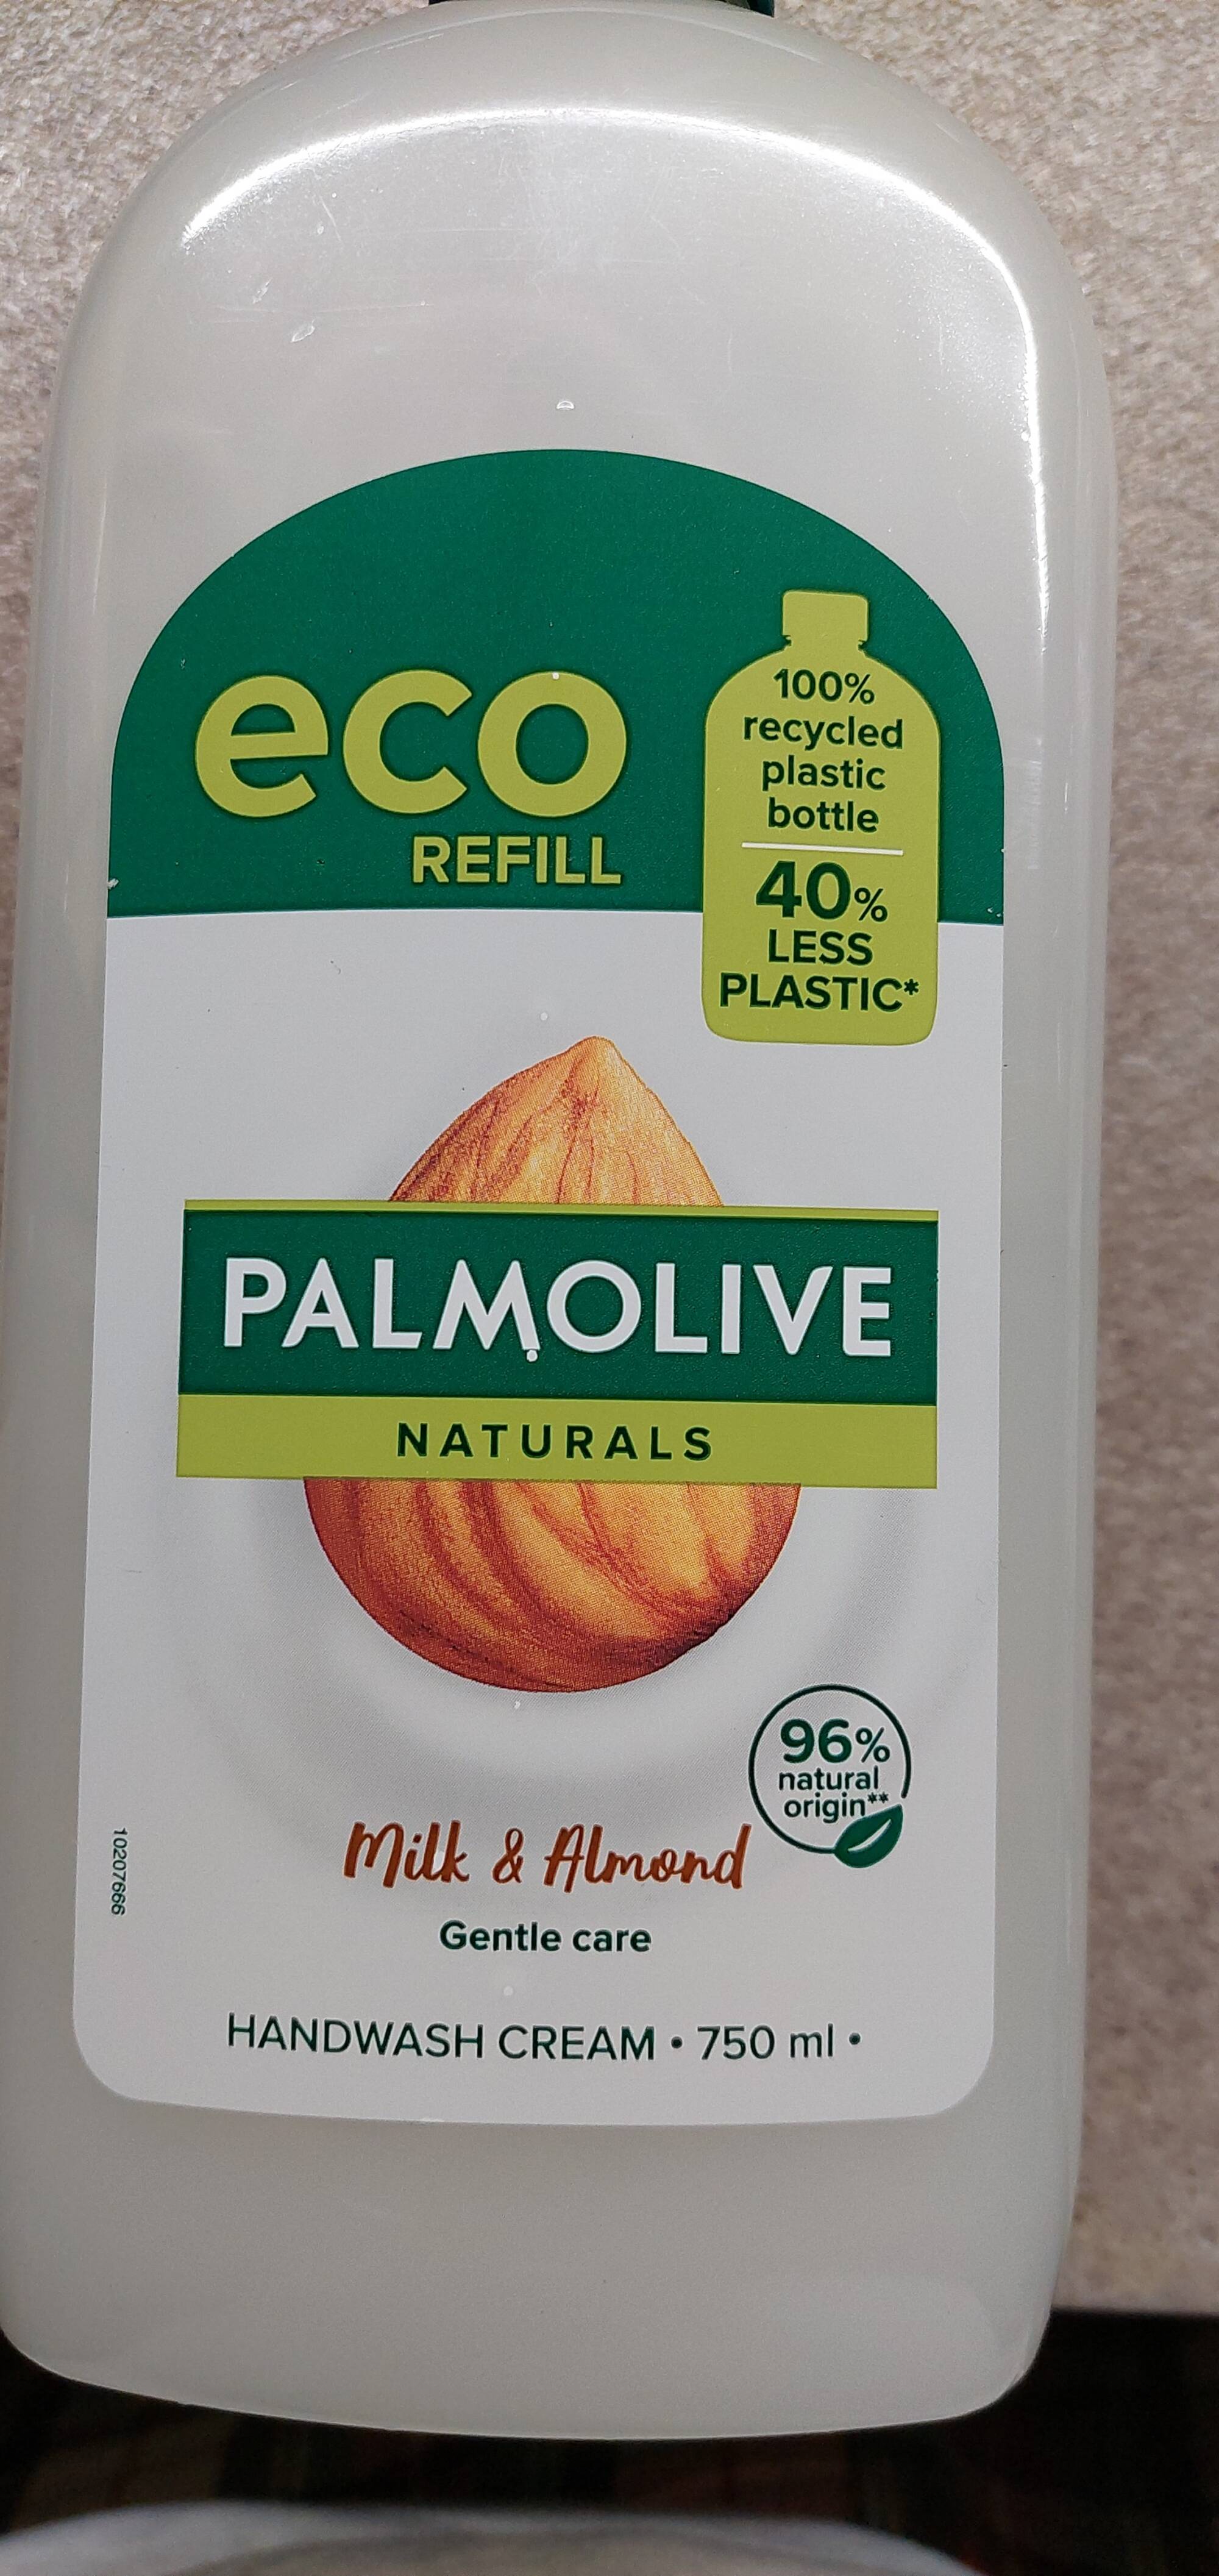 PALMOLIVE - Milk & Almond - Handwash cream